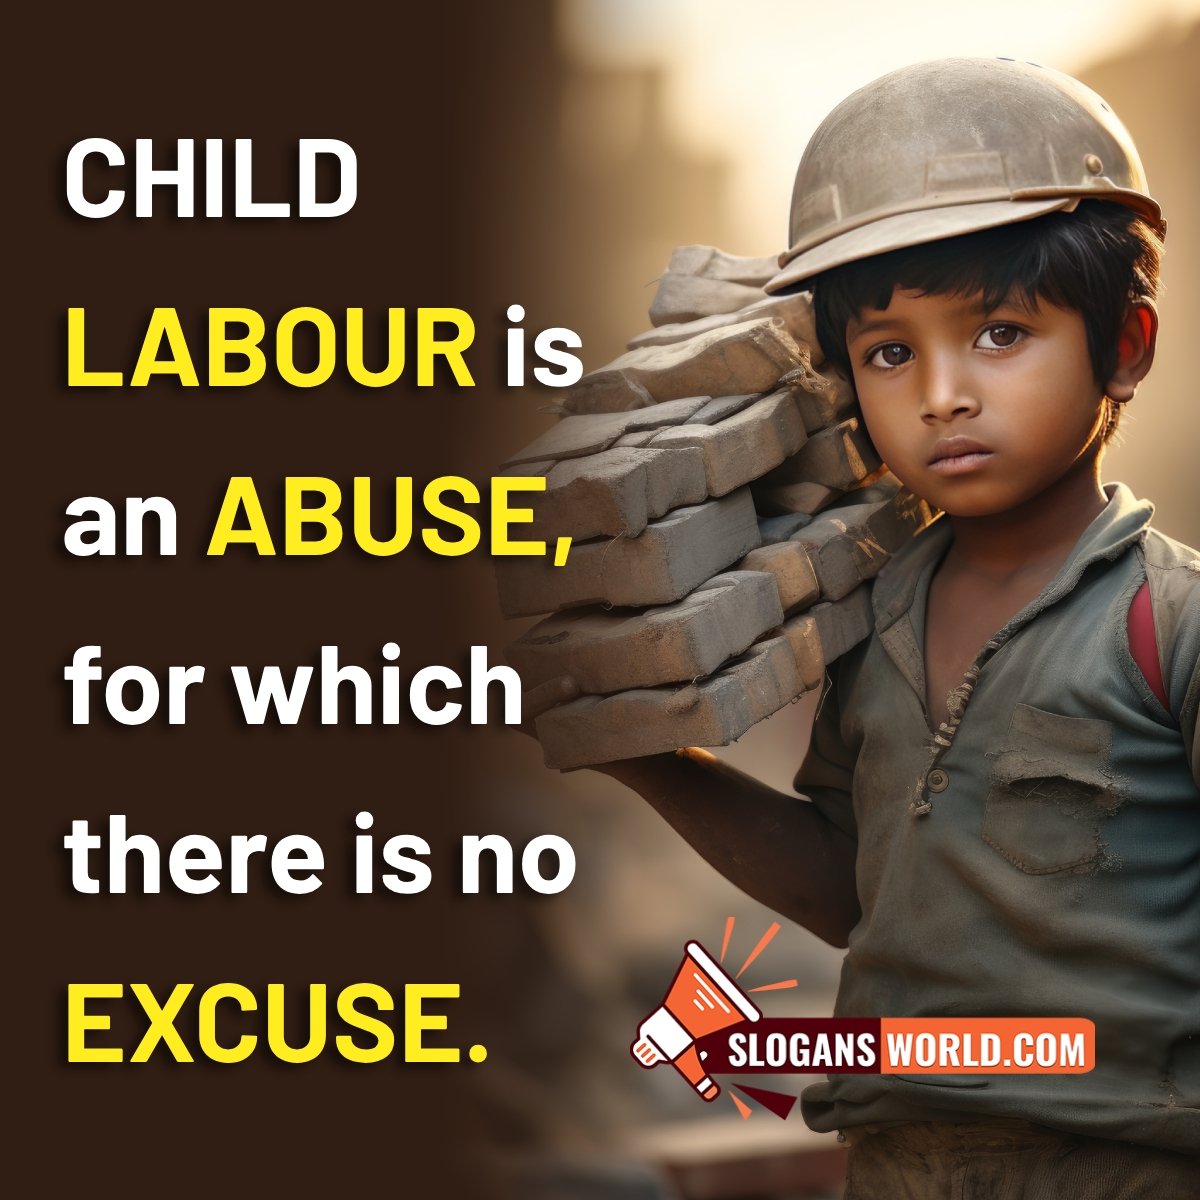 Slogans on Child Labour - Slogans World